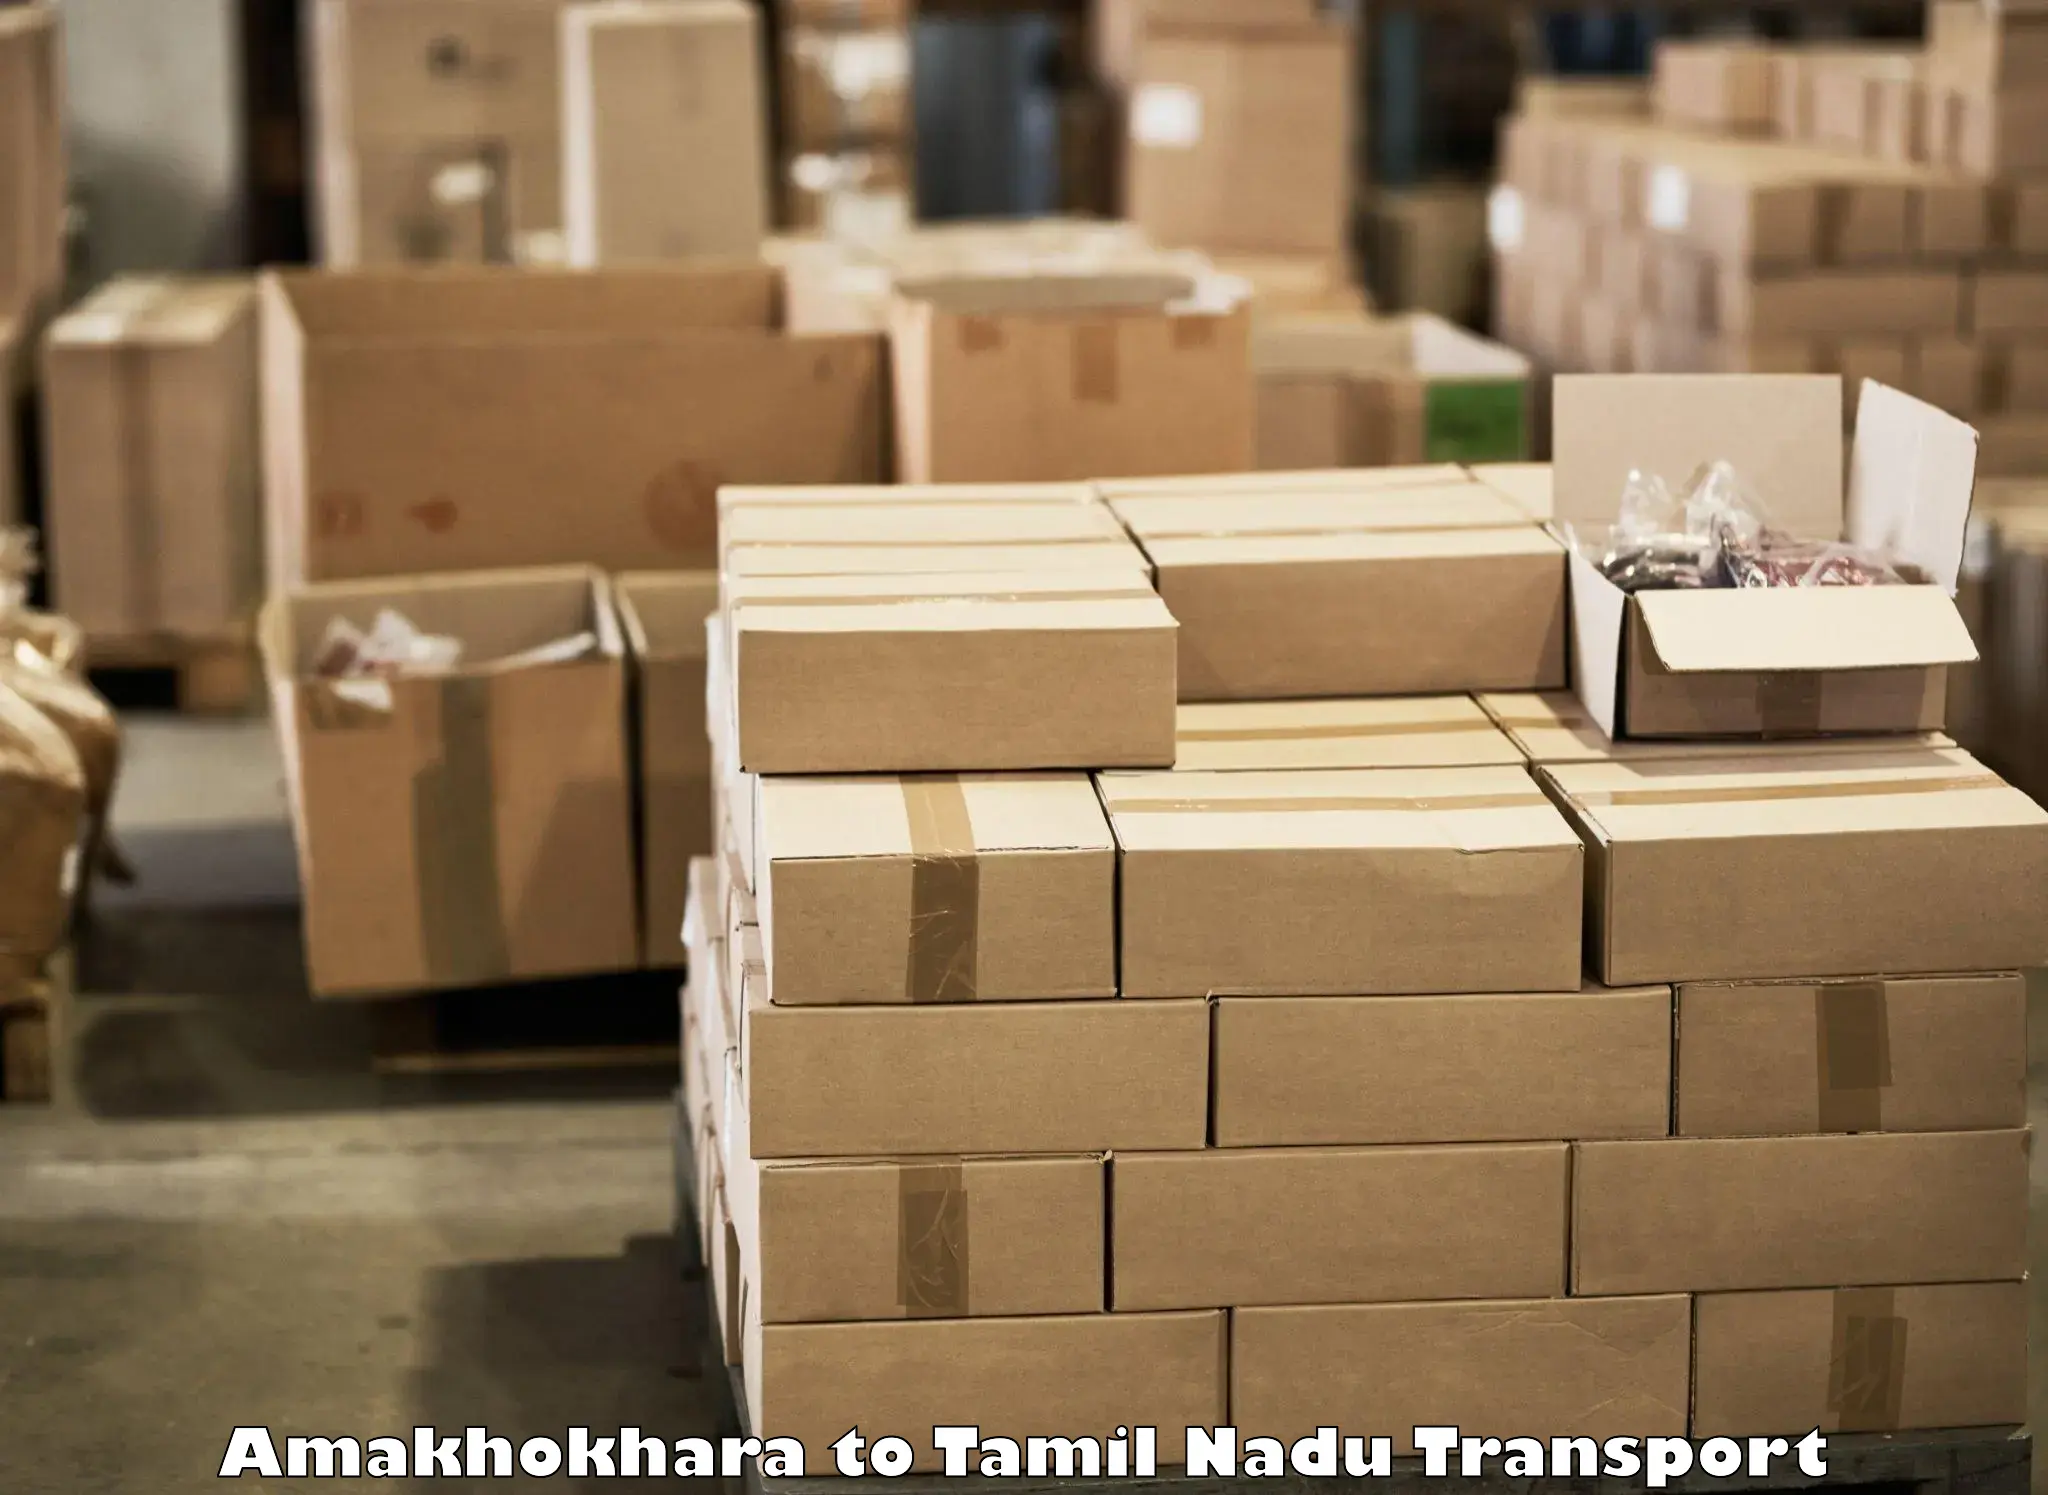 Shipping partner Amakhokhara to IIT Madras